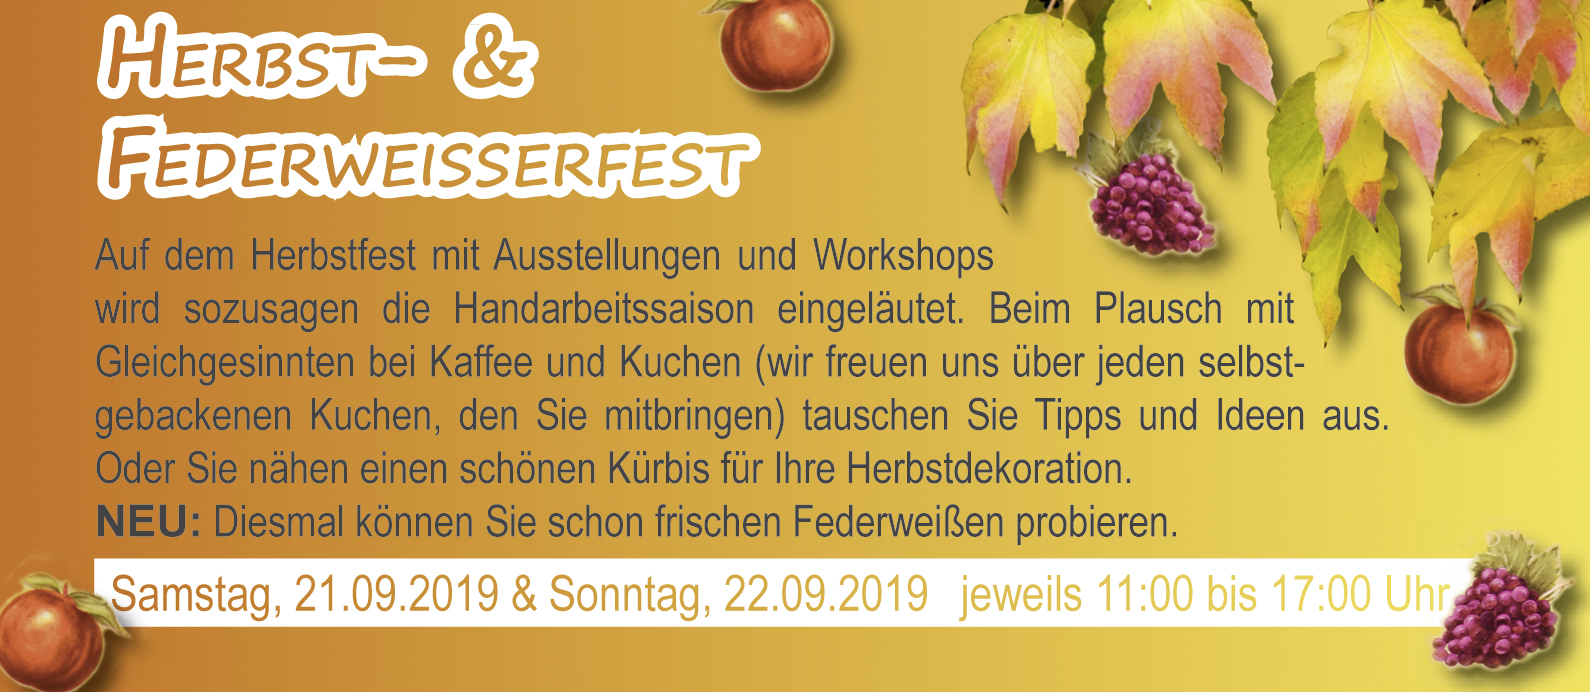 herbst-federweisserfest-2019